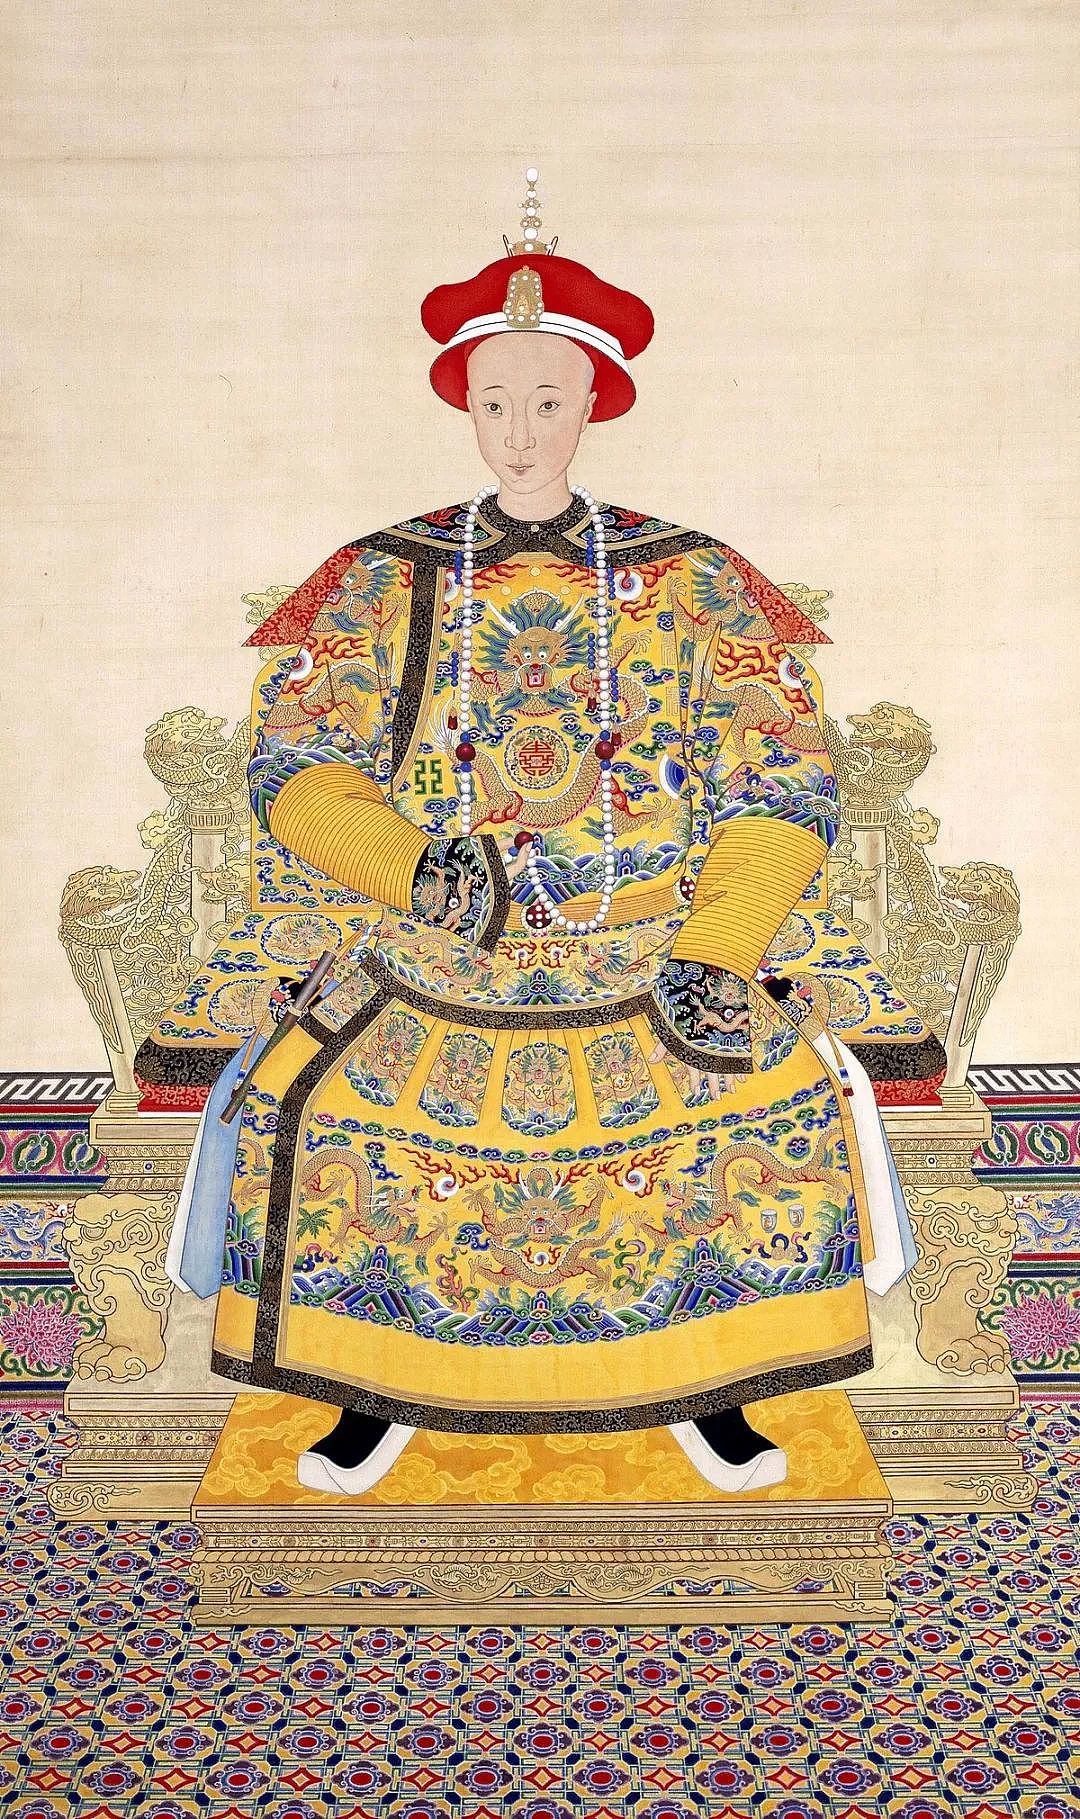 慈禧太后和她统治中国的政治模式 - 2